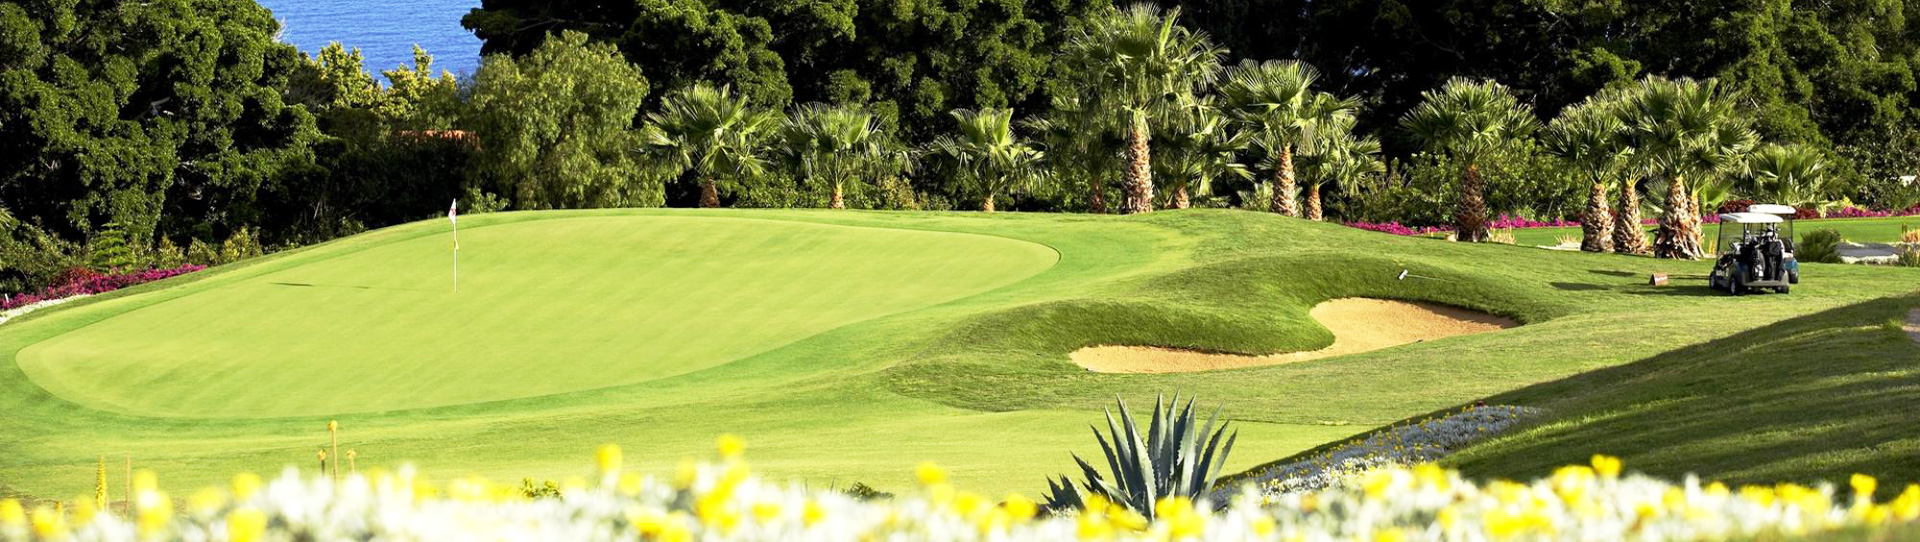 Spain golf courses - Tecina Golf Course - Photo 3